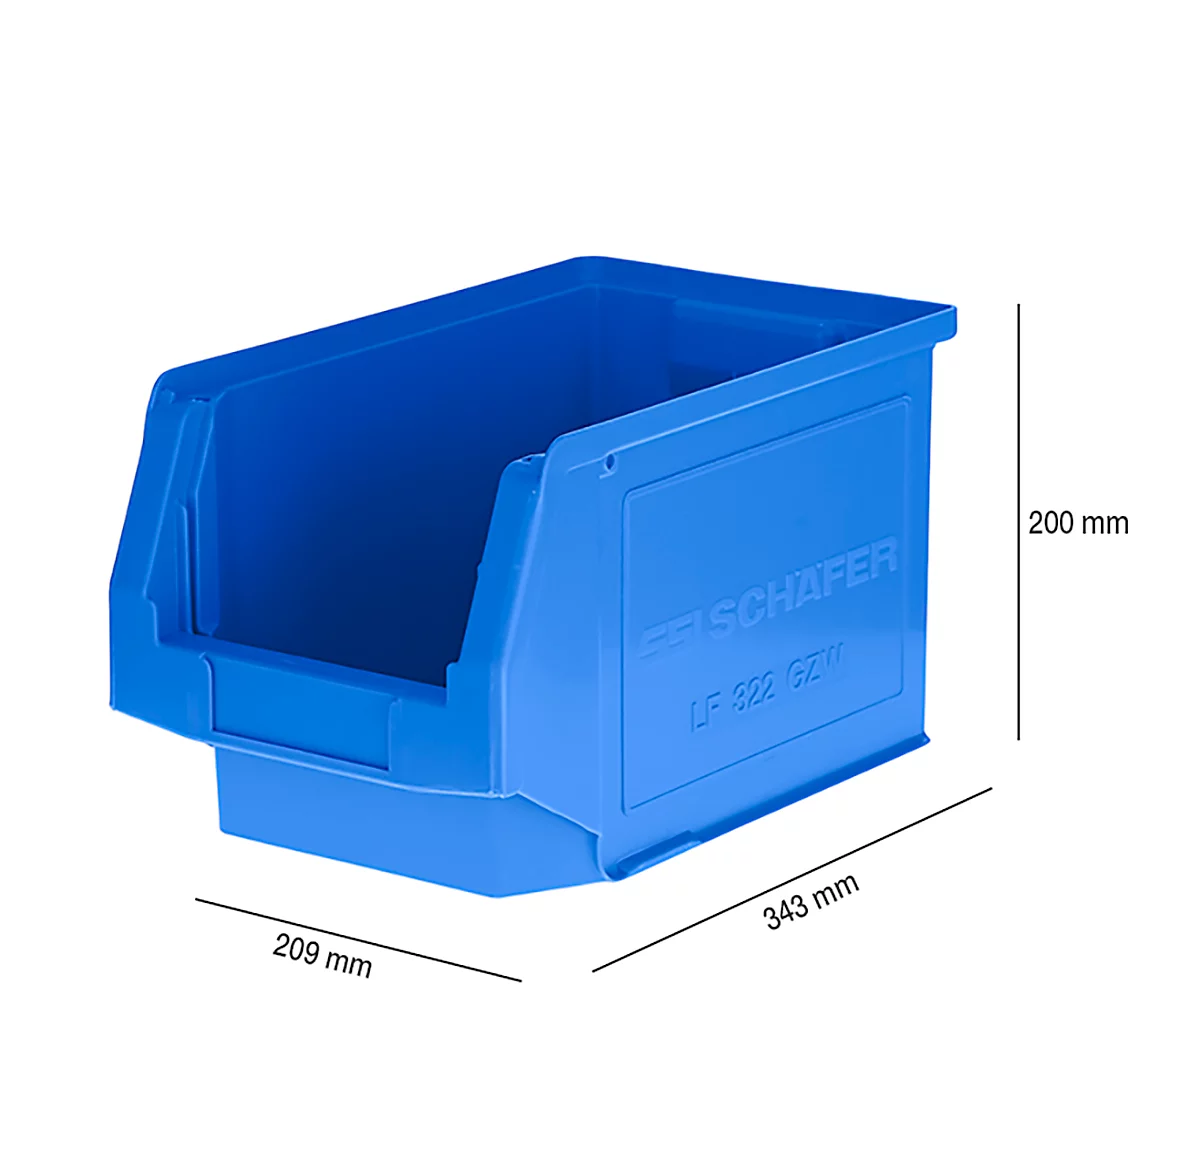 Sichtlagerkasten LF 322, Kunststoff, 10,4 l, blau